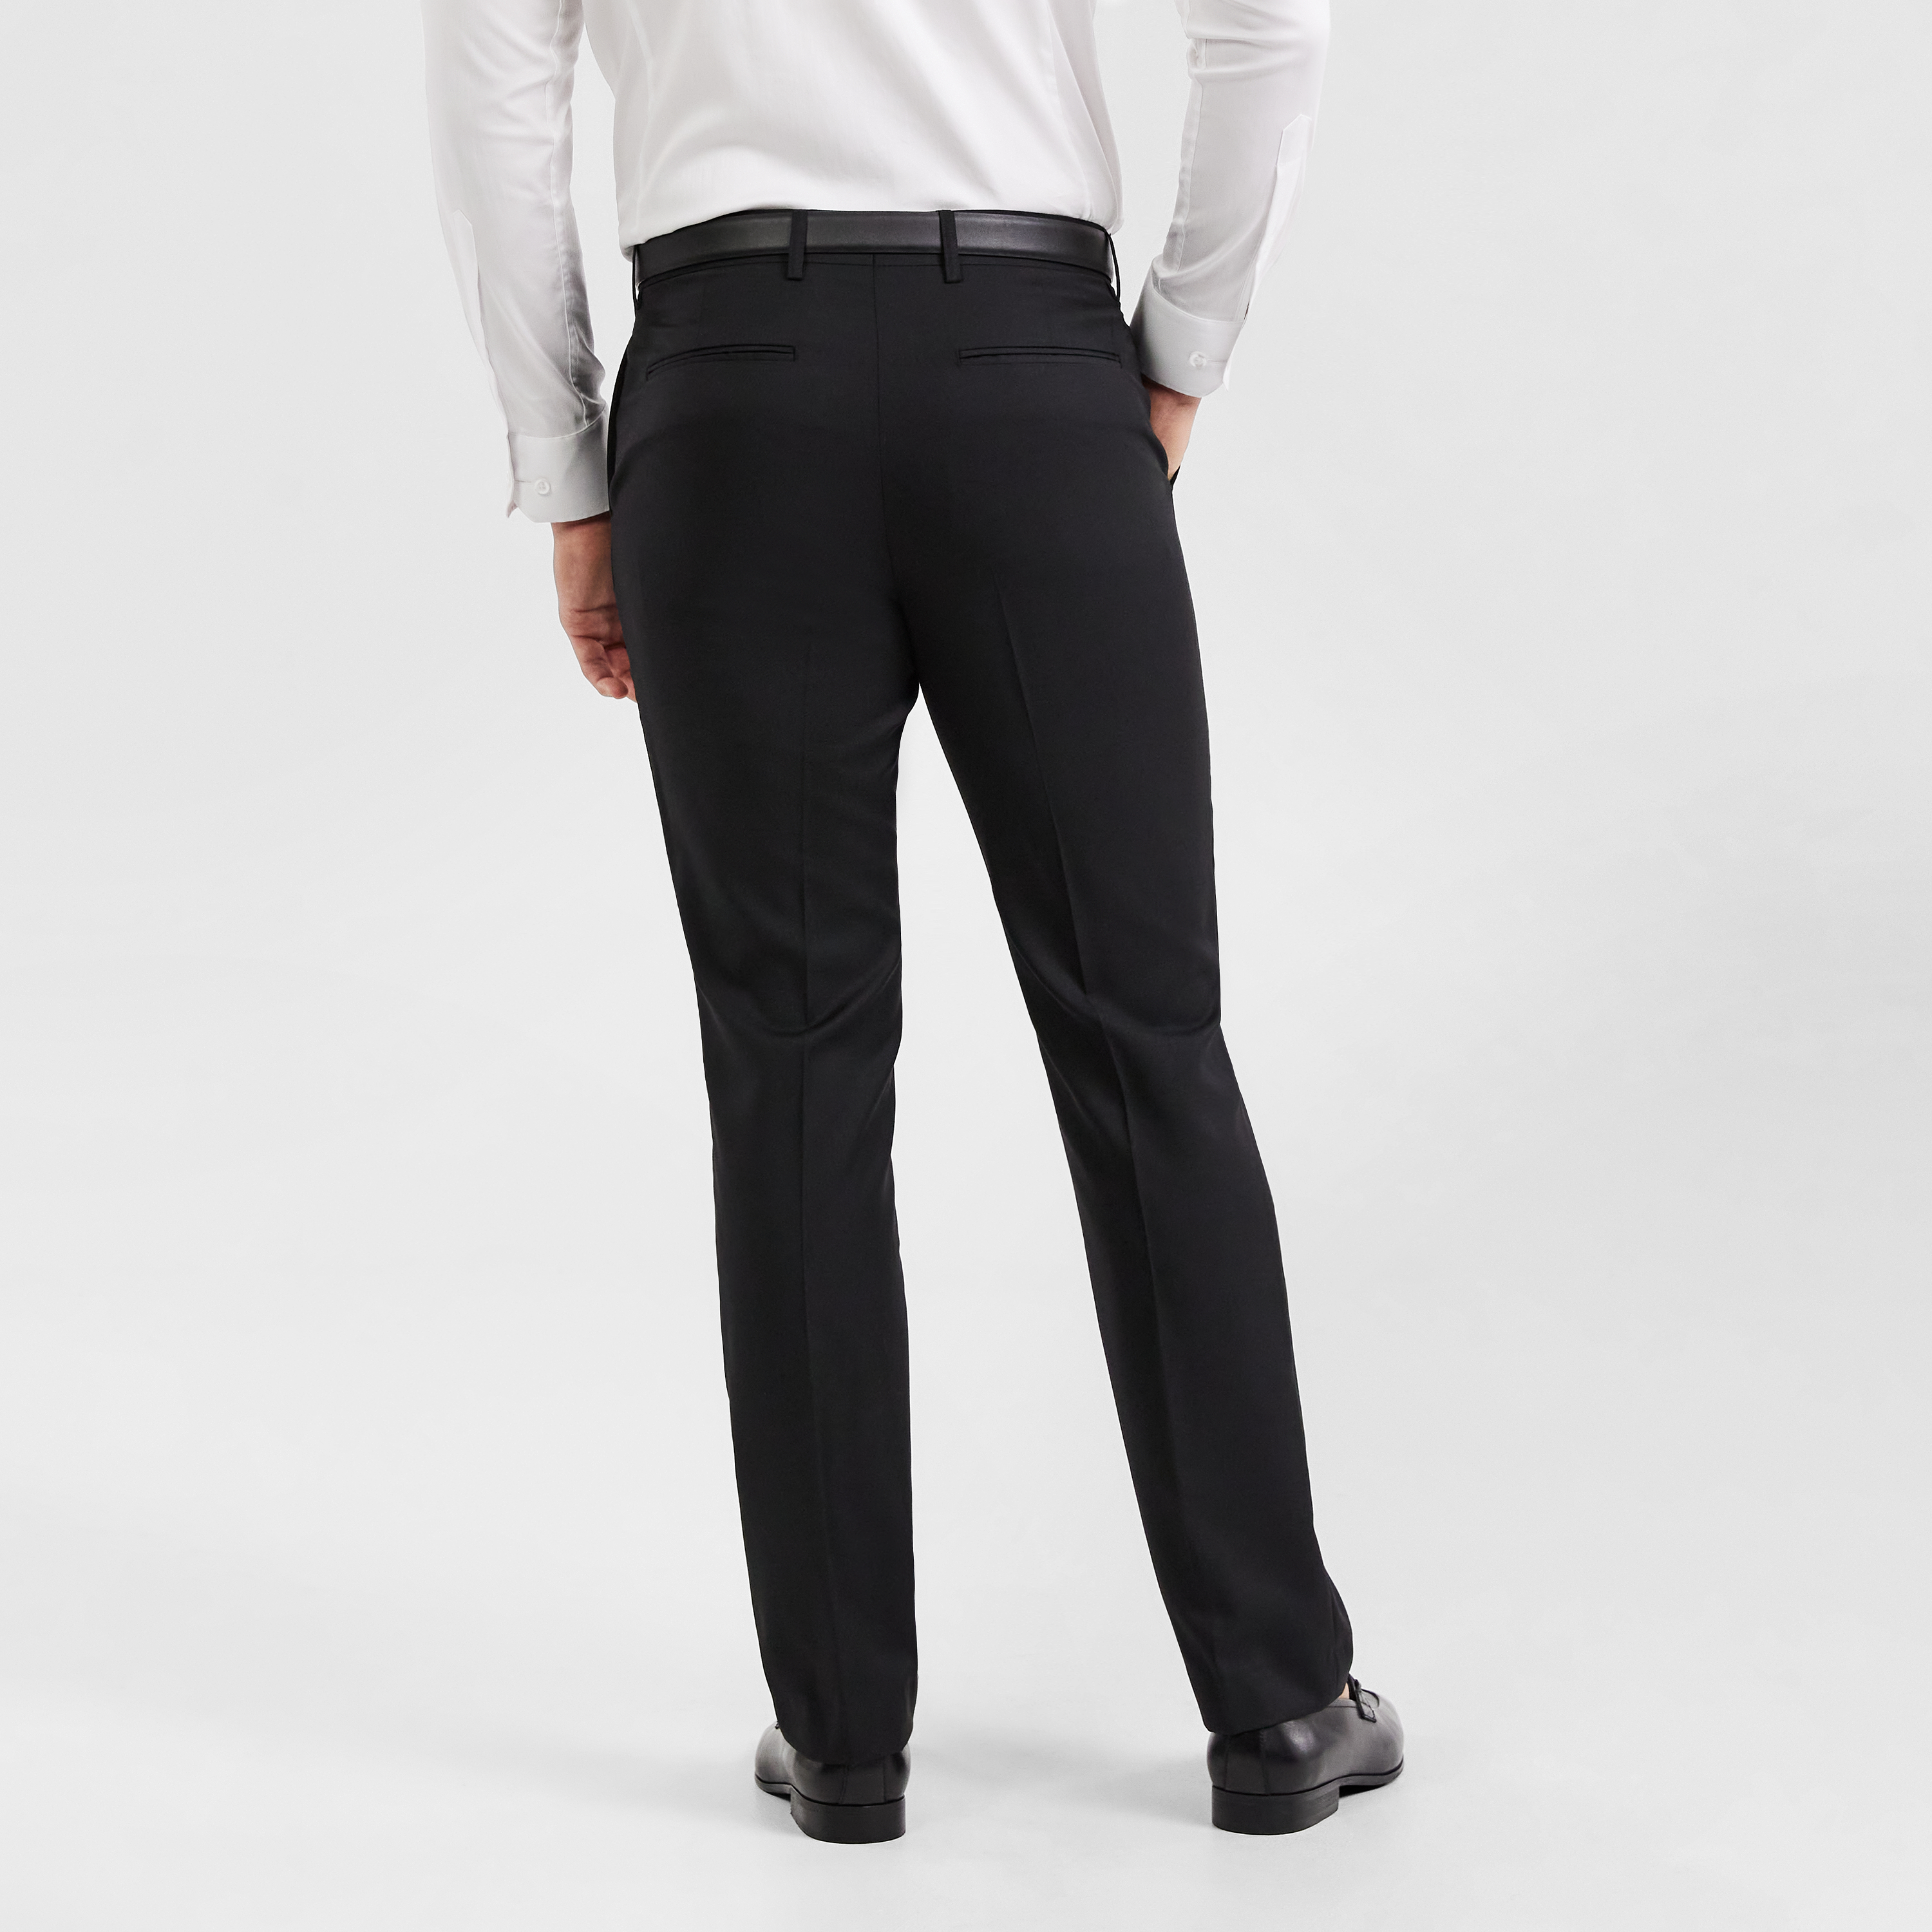 Armani Exchange Mens Slim-Fit Wool Dress Pants 33W x 30L Light Grey - NWT  $220 - Walmart.com